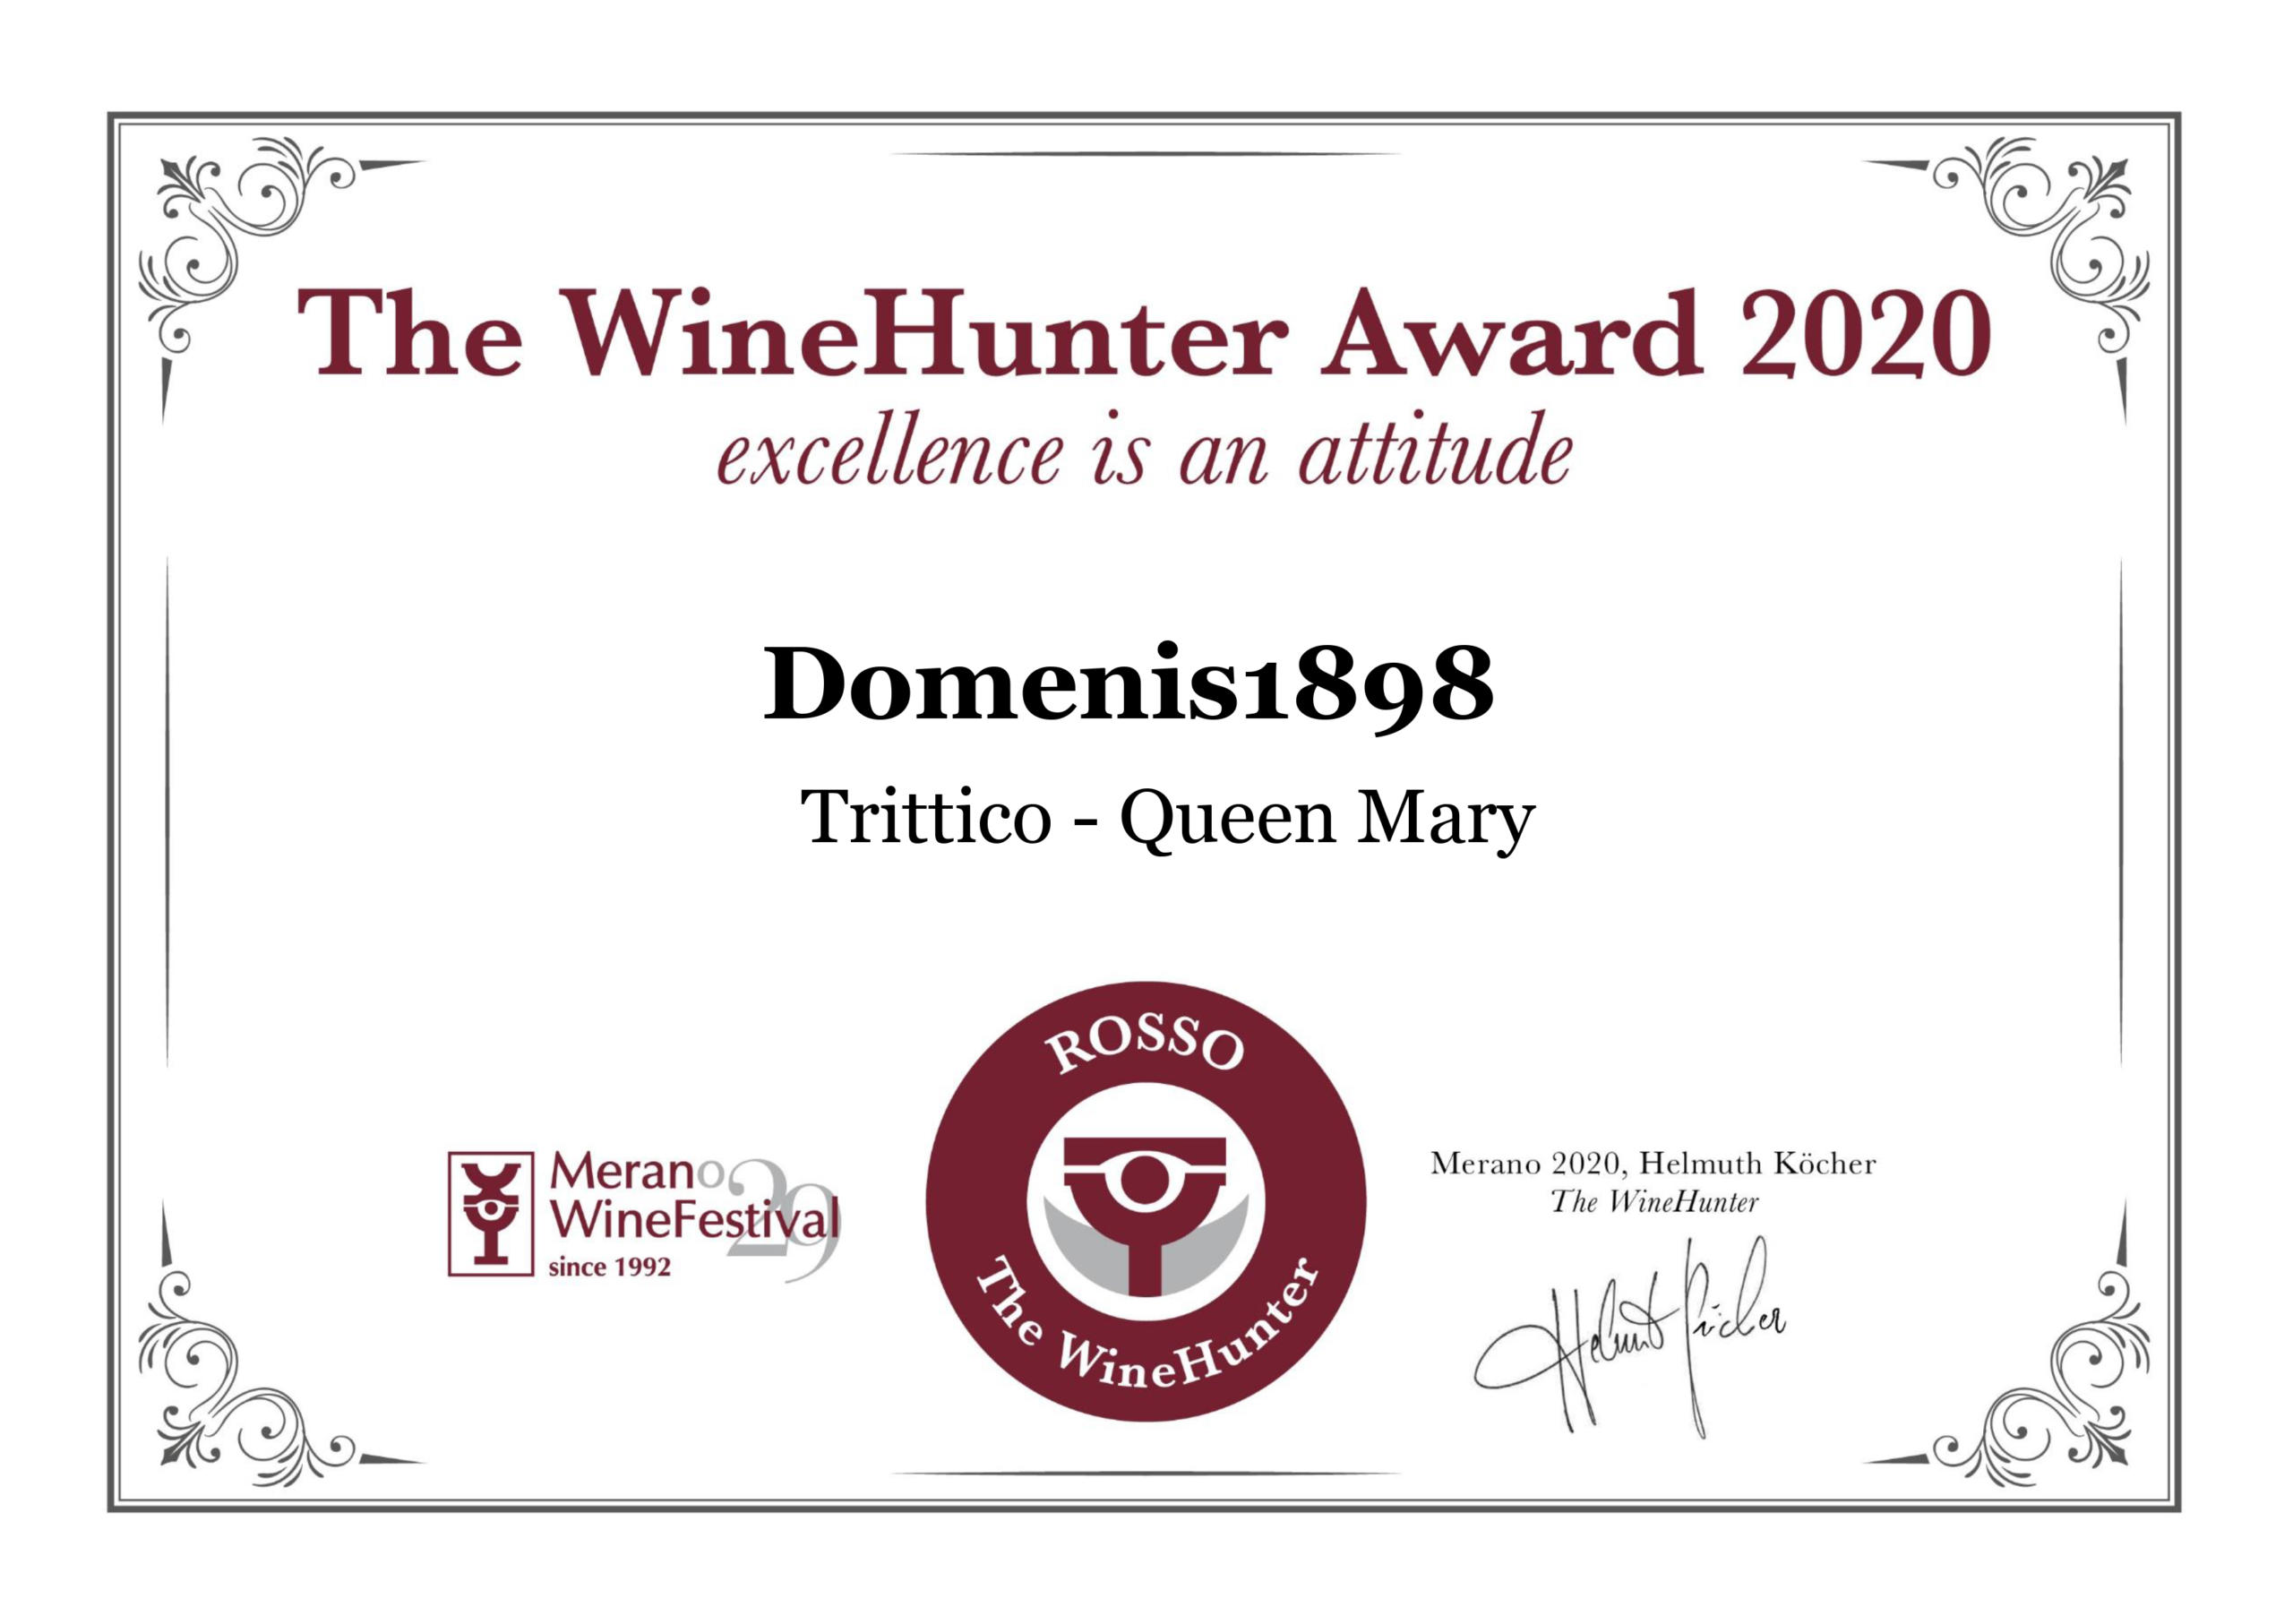 THE WINEHUNTER AWARD 2020 – PREMIO ROSSO – TRITTICO QUEEN MARY